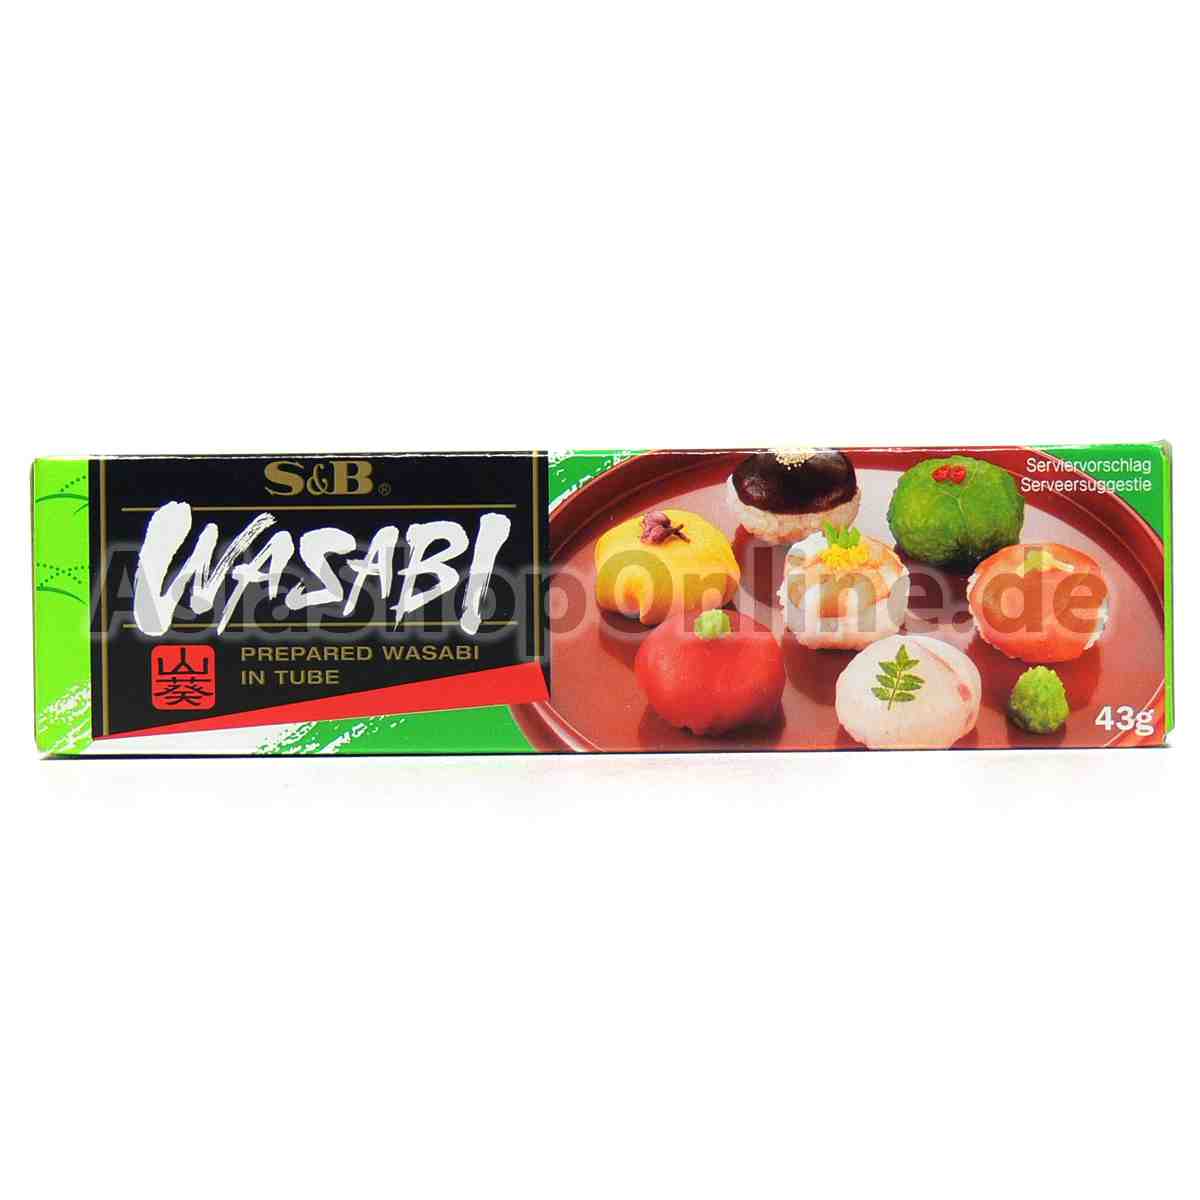 Wasabipaste - S&B - 43 g